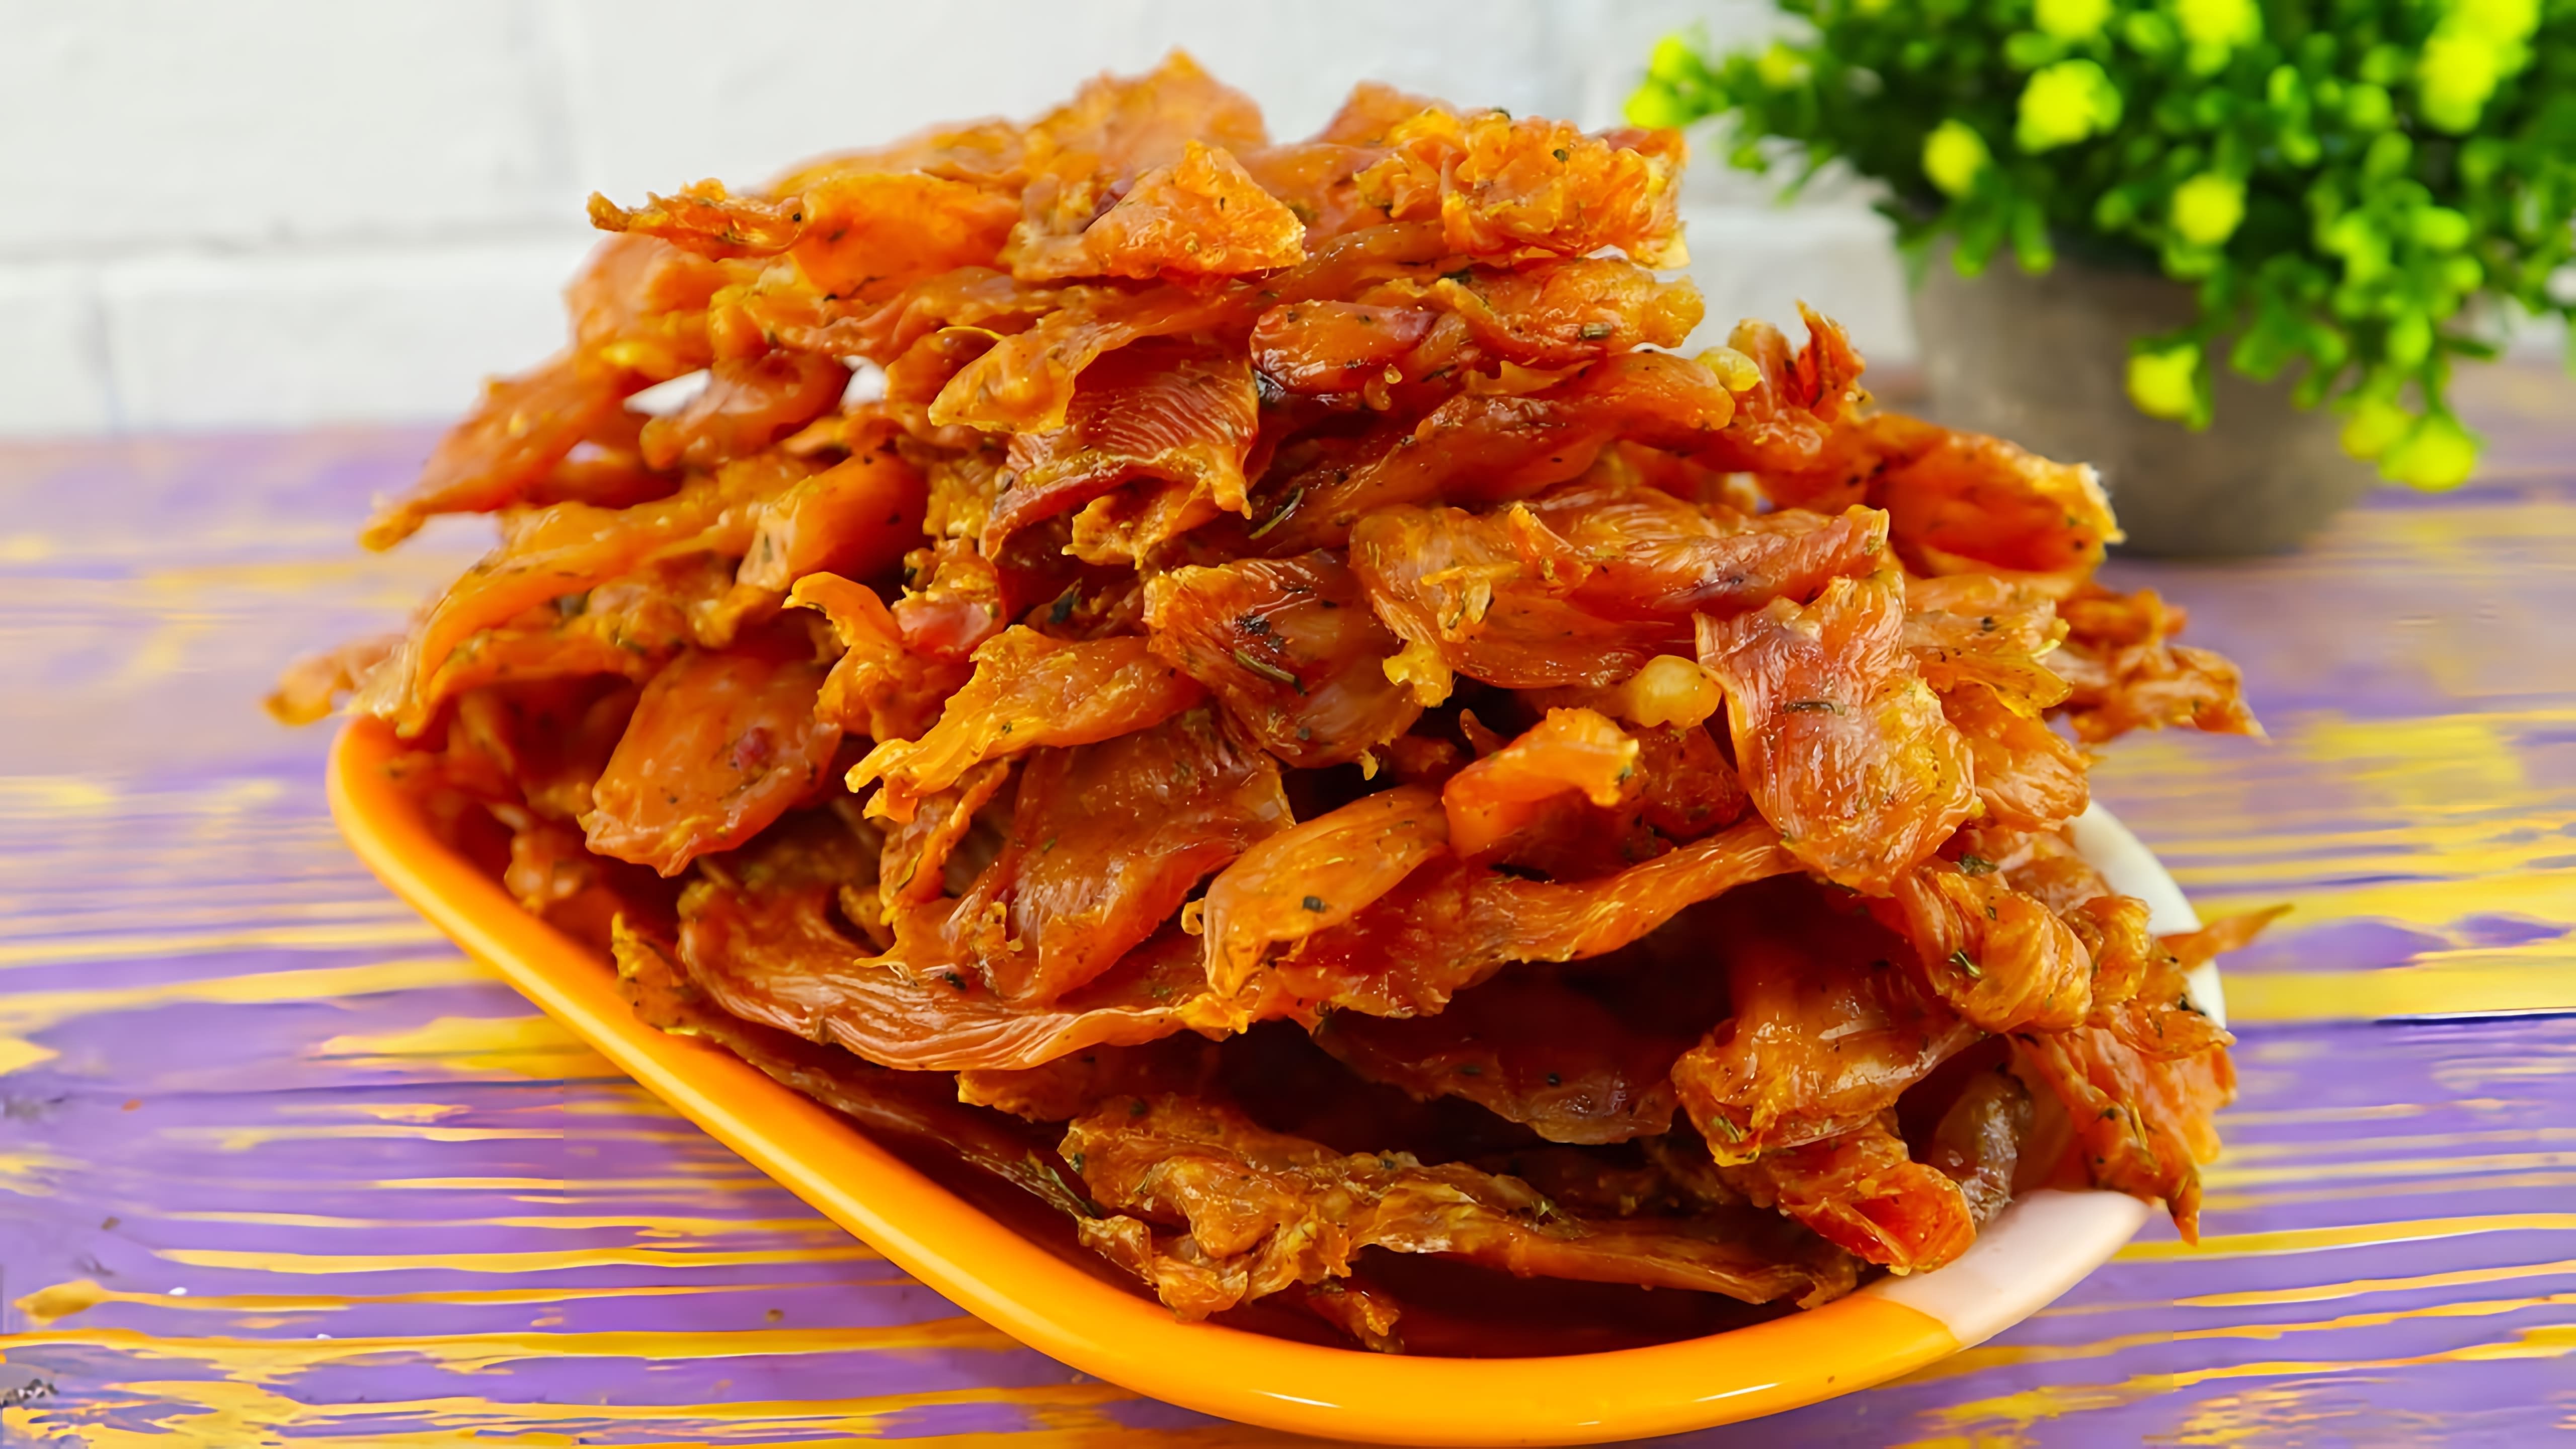 Мясные чипсы из курицы - это вкусное и простое блюдо, которое можно приготовить в домашних условиях